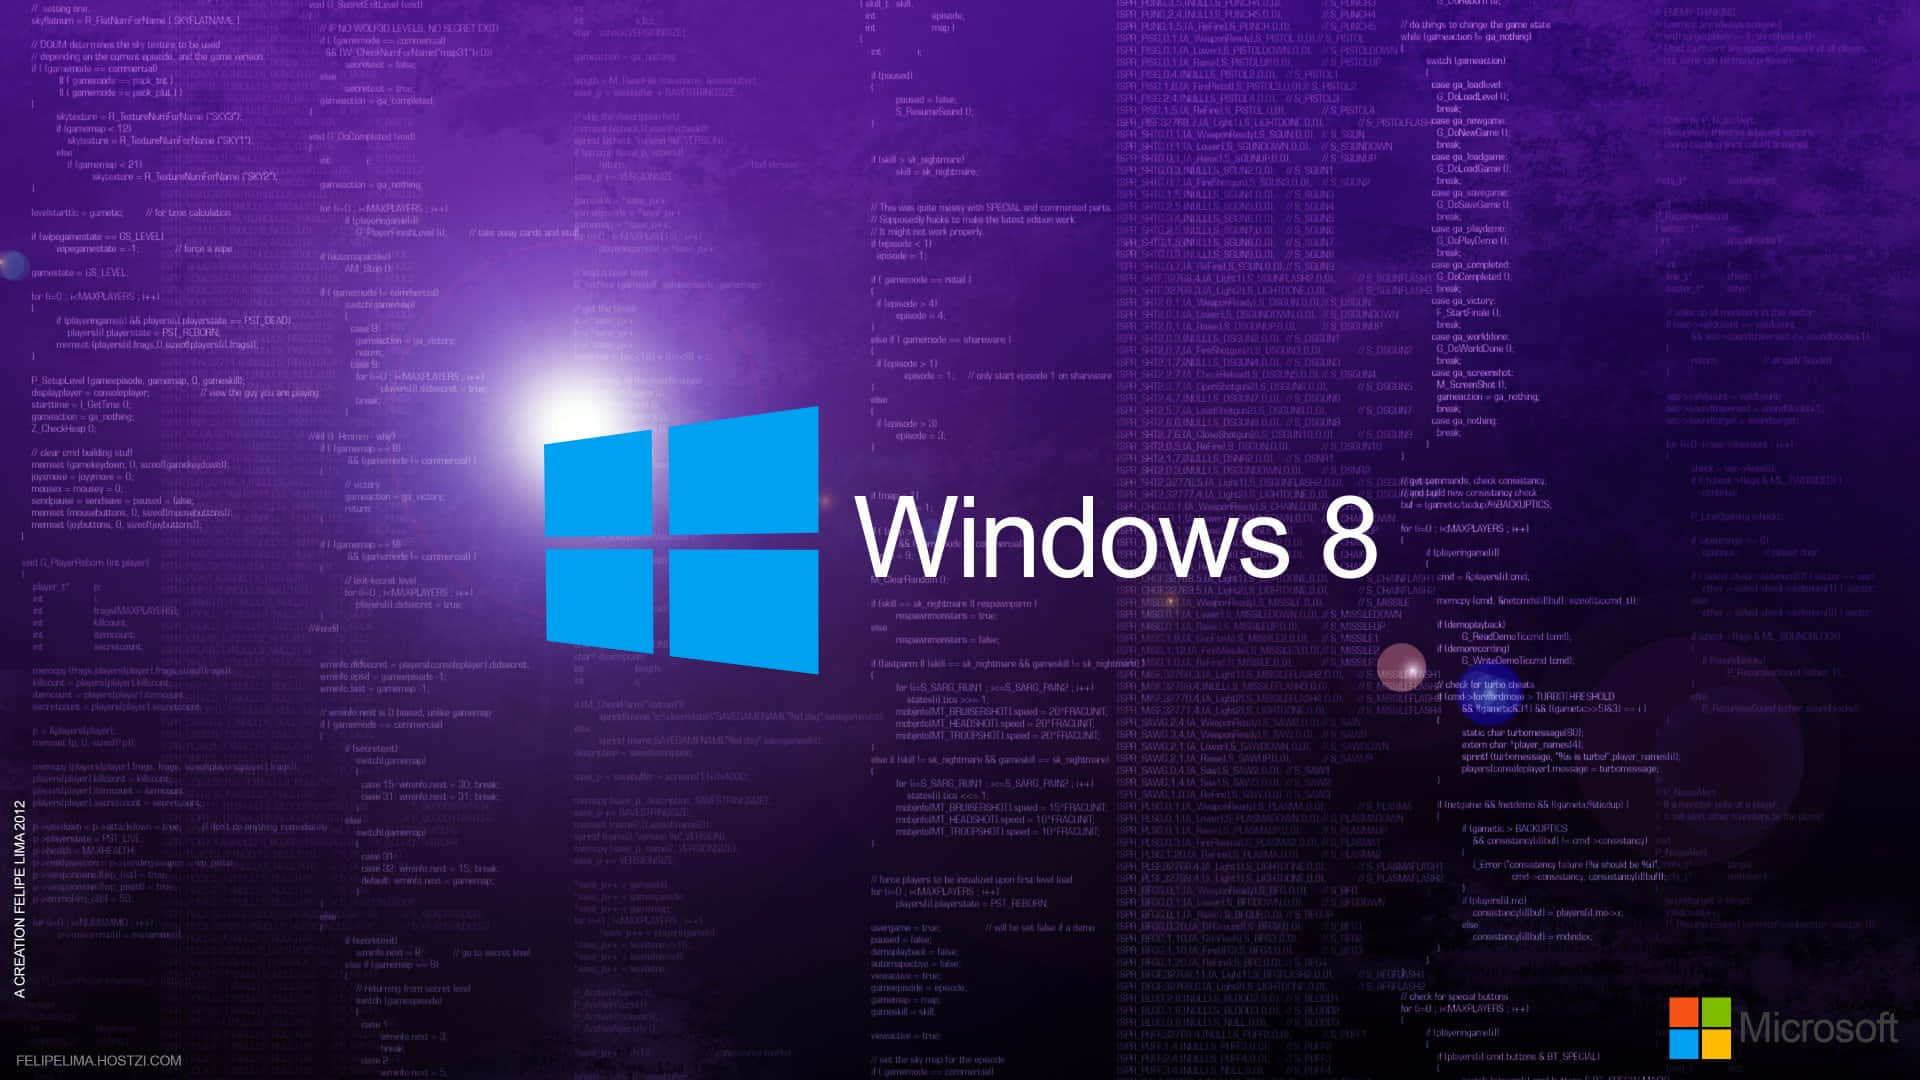 Sfondoartistico Astratto Vibrante Per Windows 8